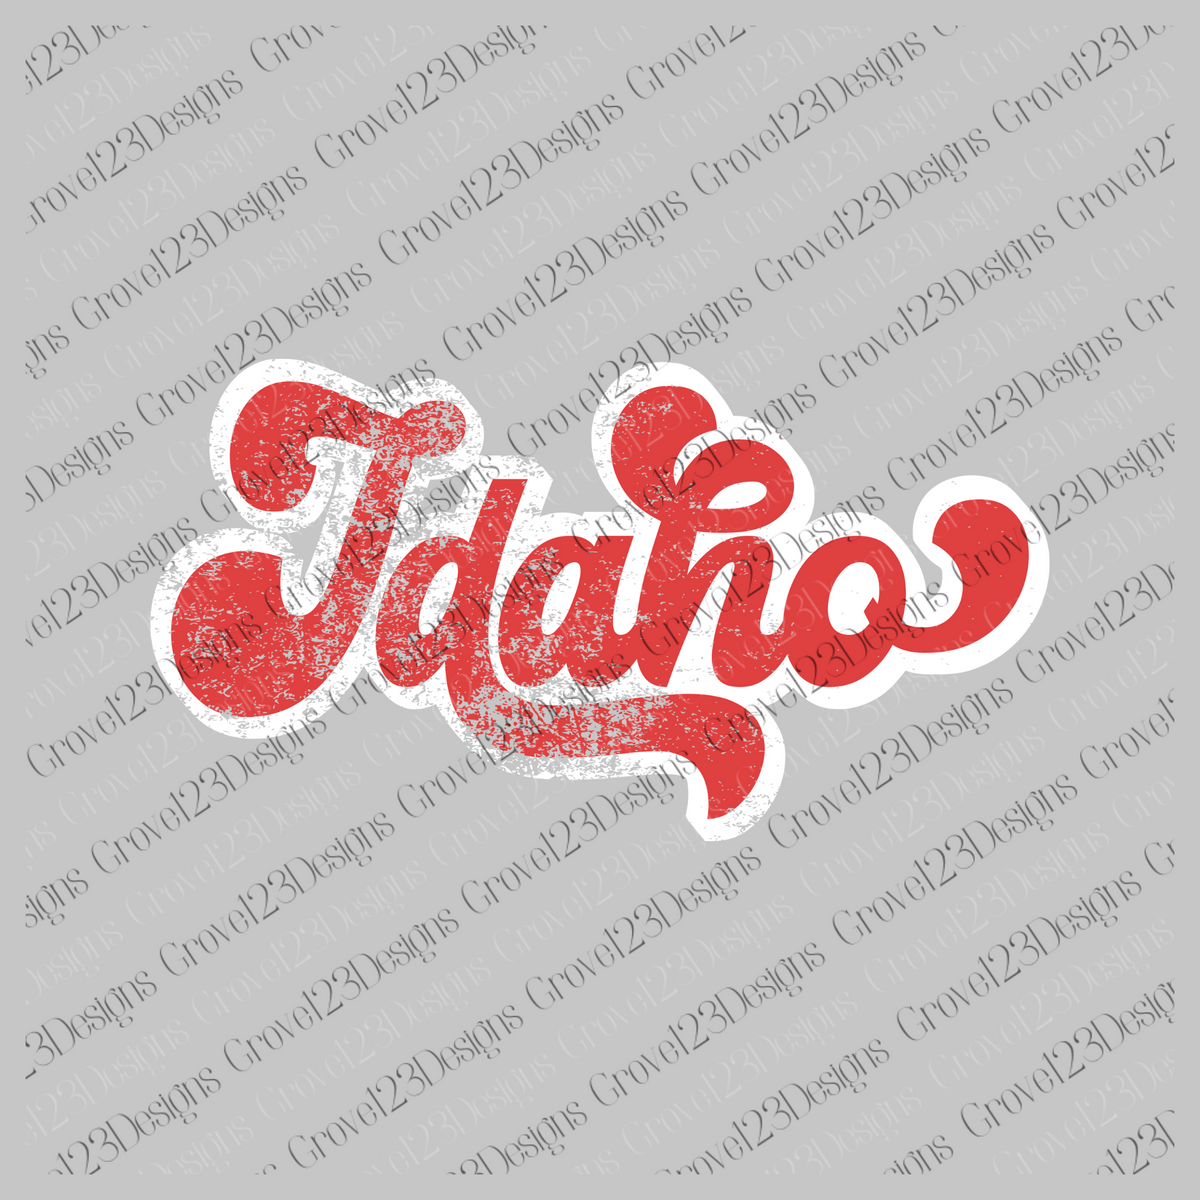 Idaho Red & White Retro Shadow Distressed